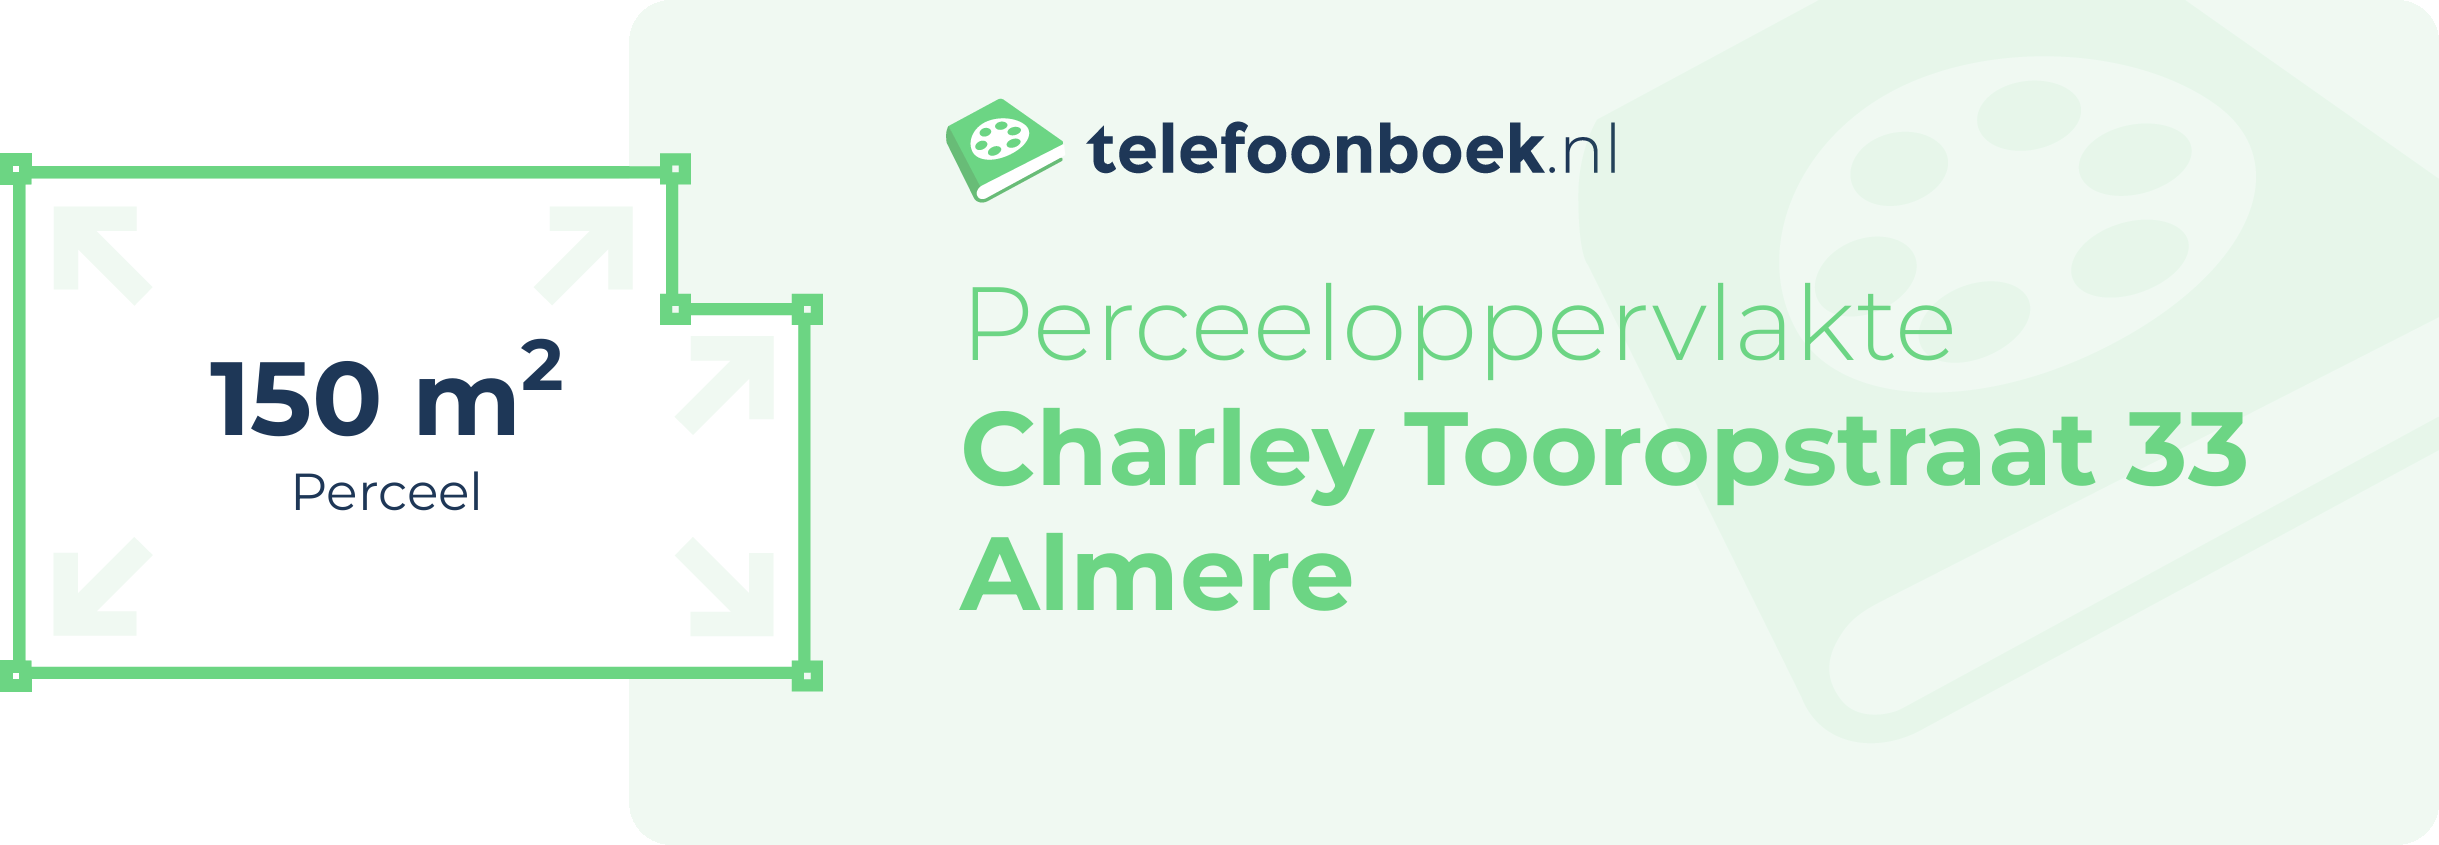 Perceeloppervlakte Charley Tooropstraat 33 Almere